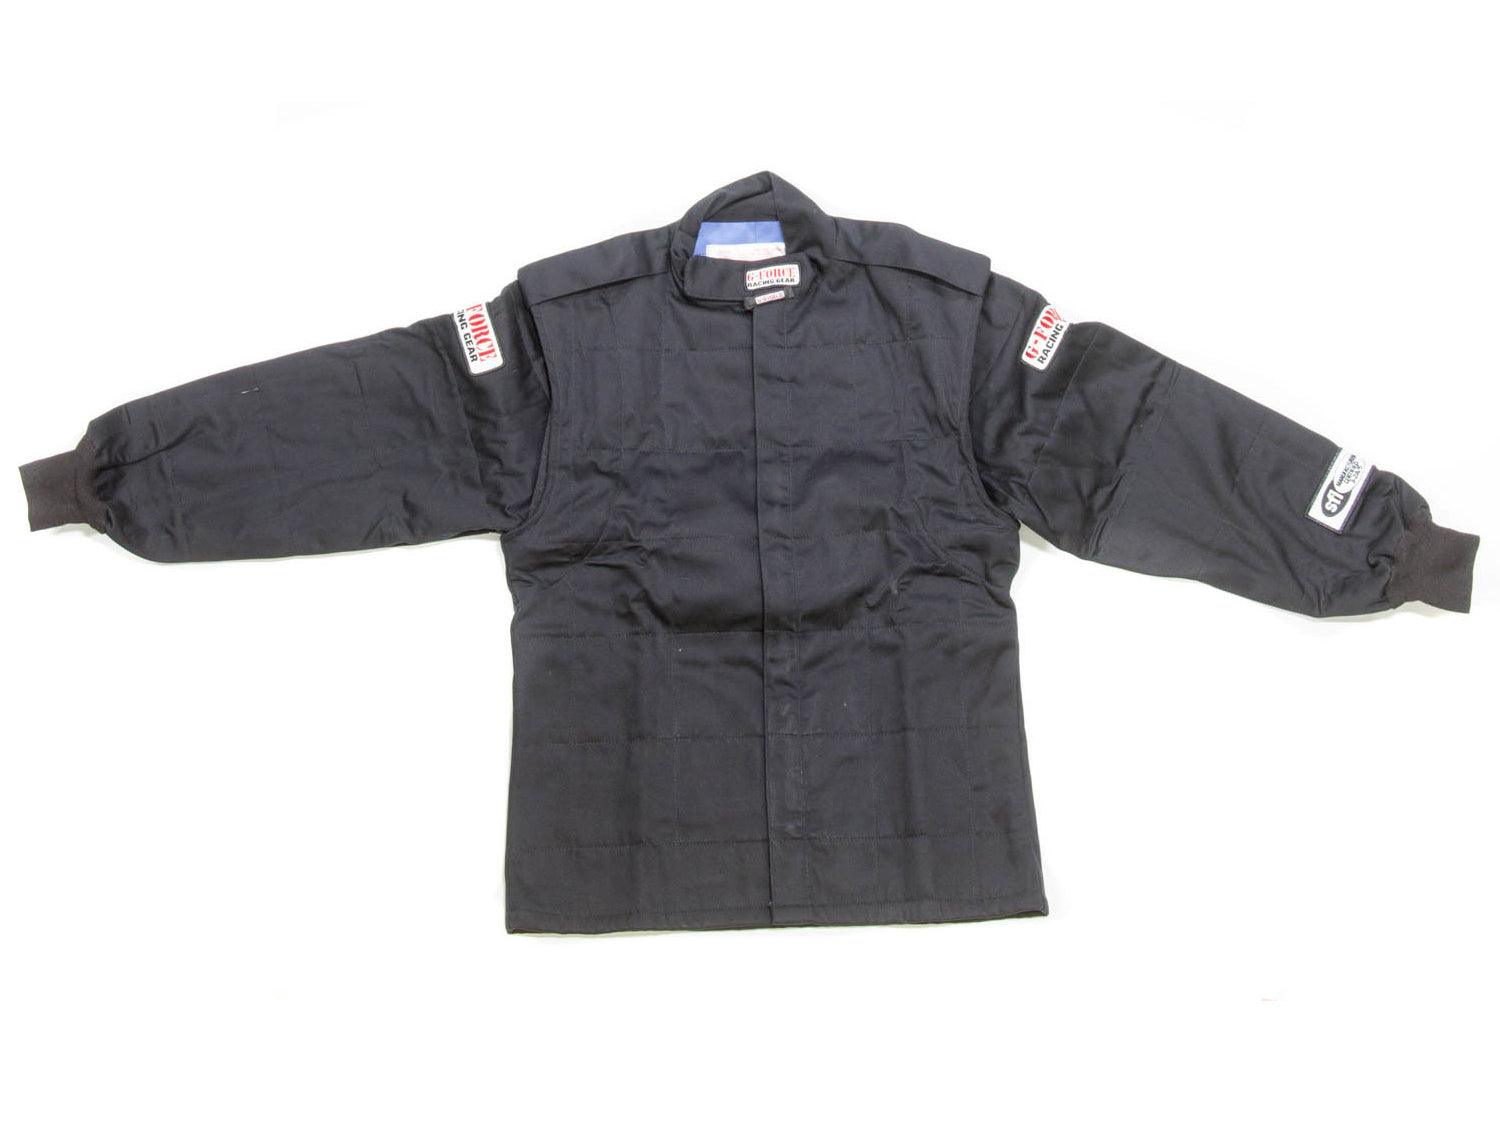 GF525 Jacket Medium Black - Burlile Performance Products